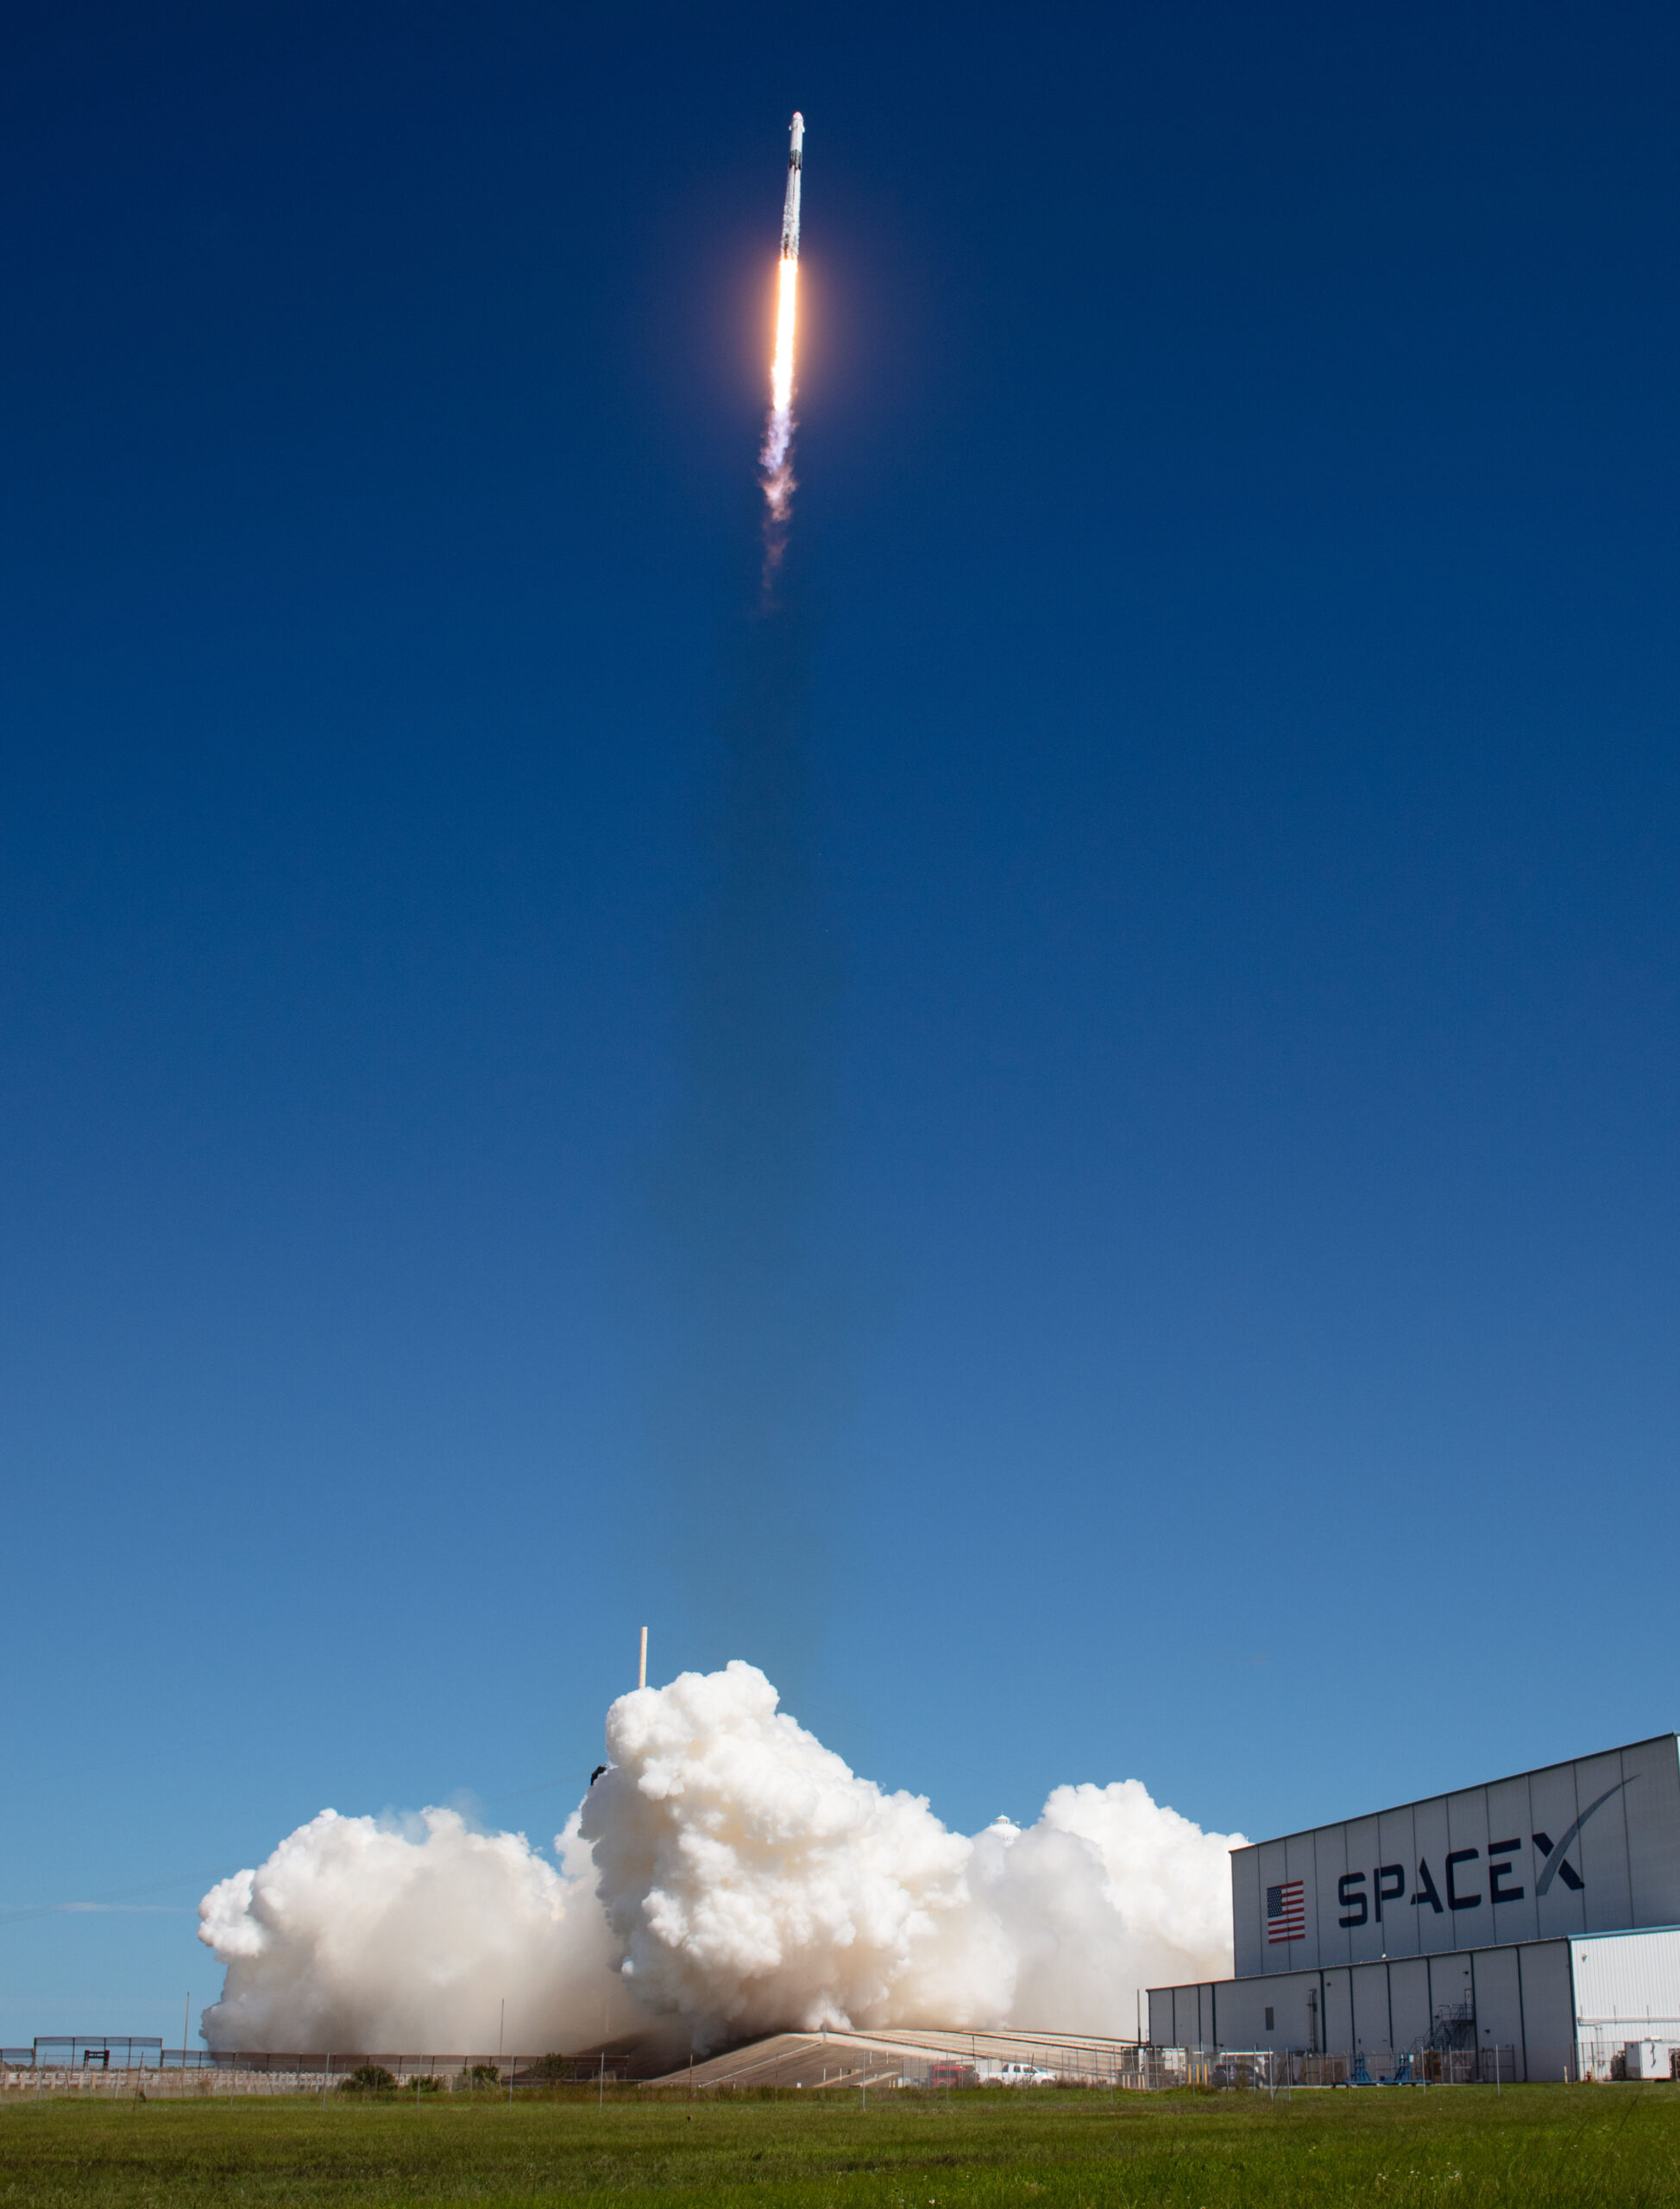 'ดาวเทียมอินเทอร์เน็ตสตาร์ลิงก์' ของ SpaceX ถูกส่งสู่อวกาศเพิ่ม 23 ดวง